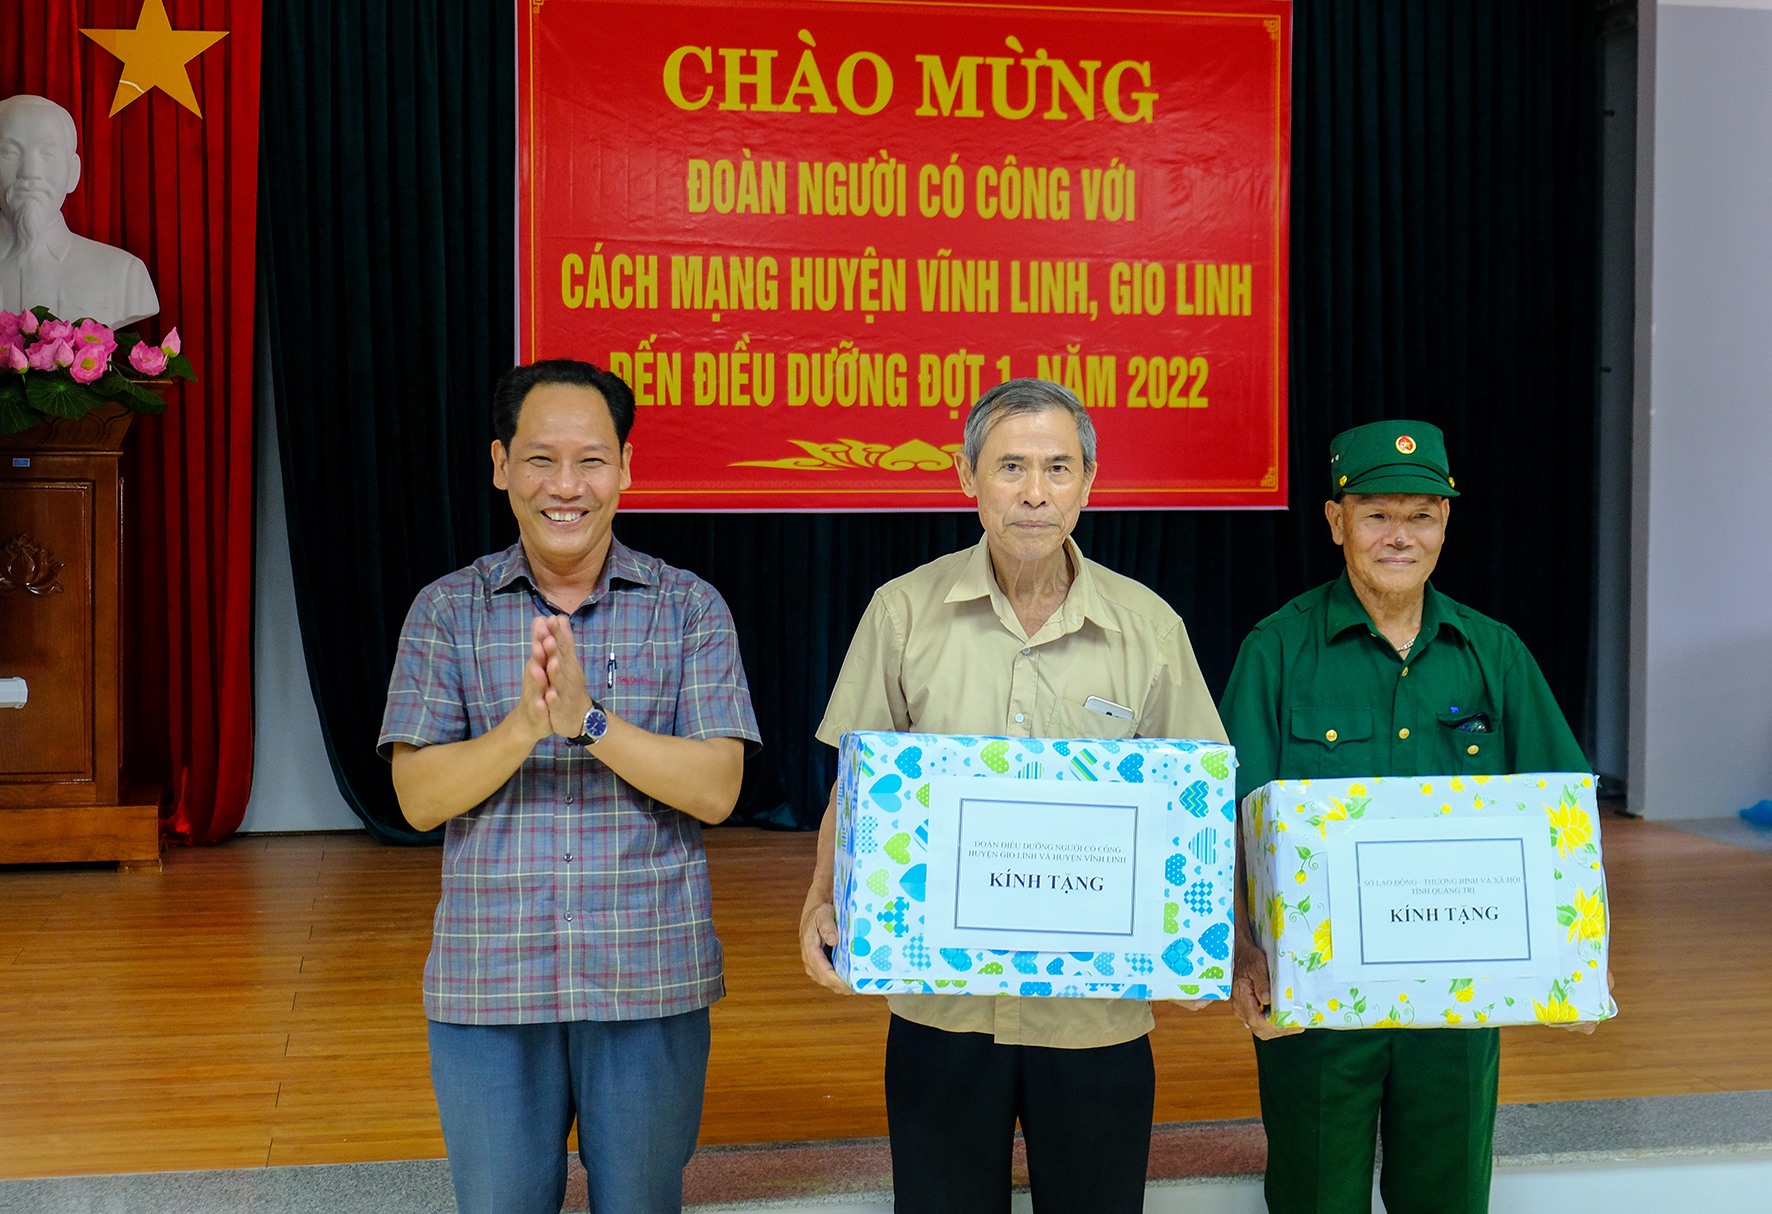 Giám đốc Sở LĐ,TB&XH Lê Nguyên Hồng tặng quà cho người có công của huyện Gio Linh, Vĩnh Linh điều dưỡng đợt 1 năm 2022 - Ảnh: Trần Tuyền